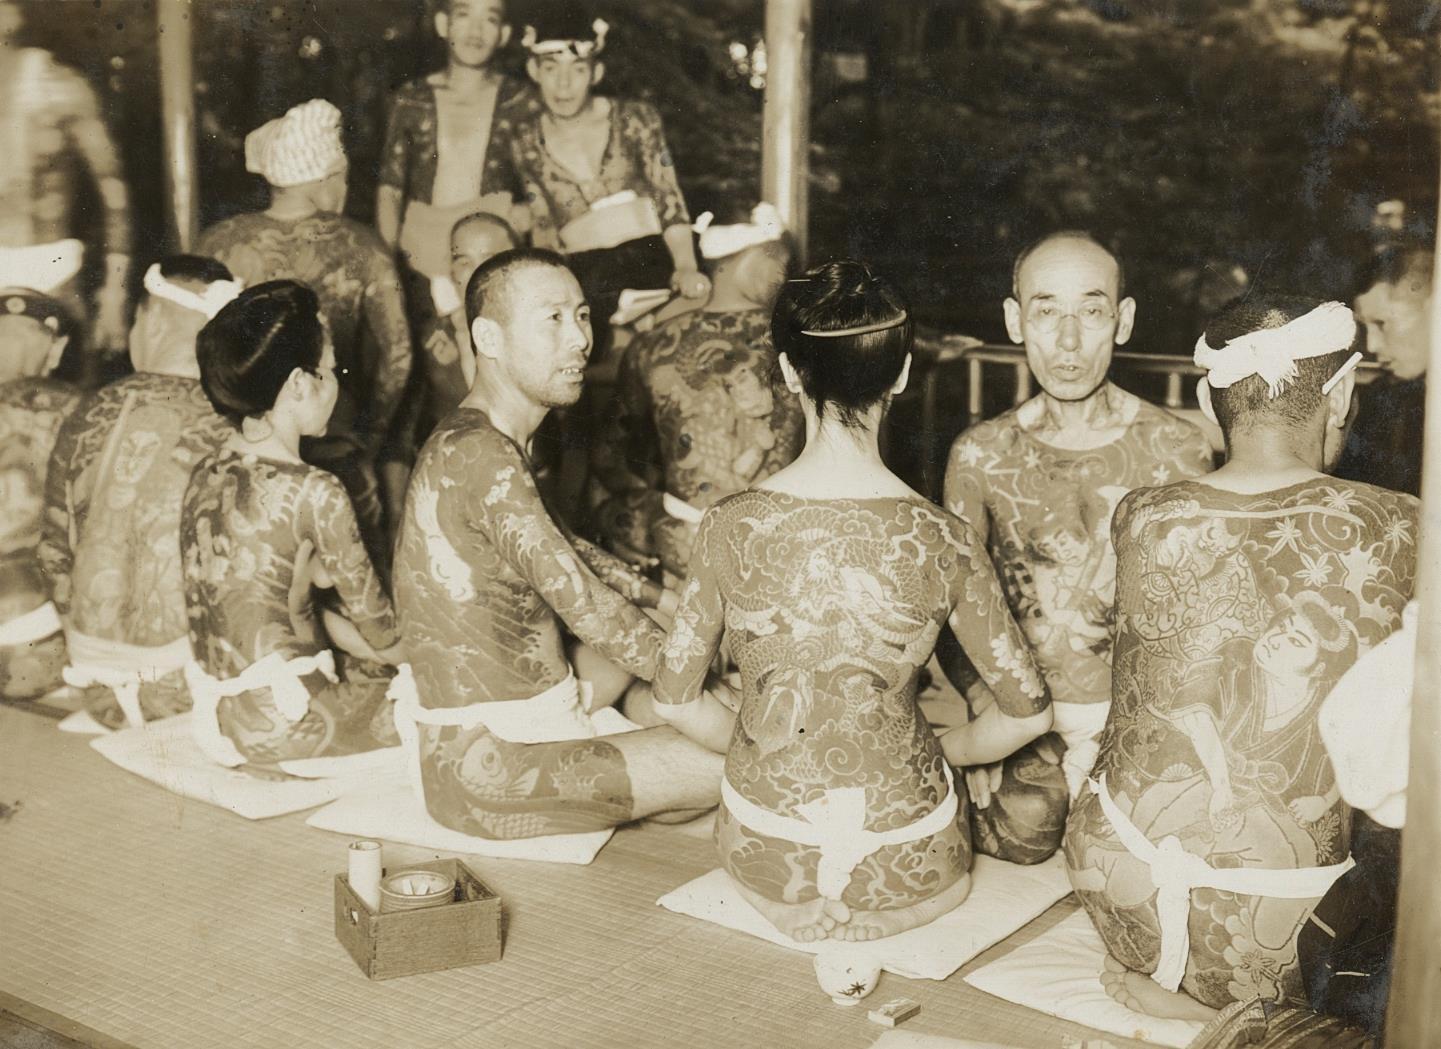 c. 1910's Yakuza Group of Men & Women with Full Body Tattoos Photograph